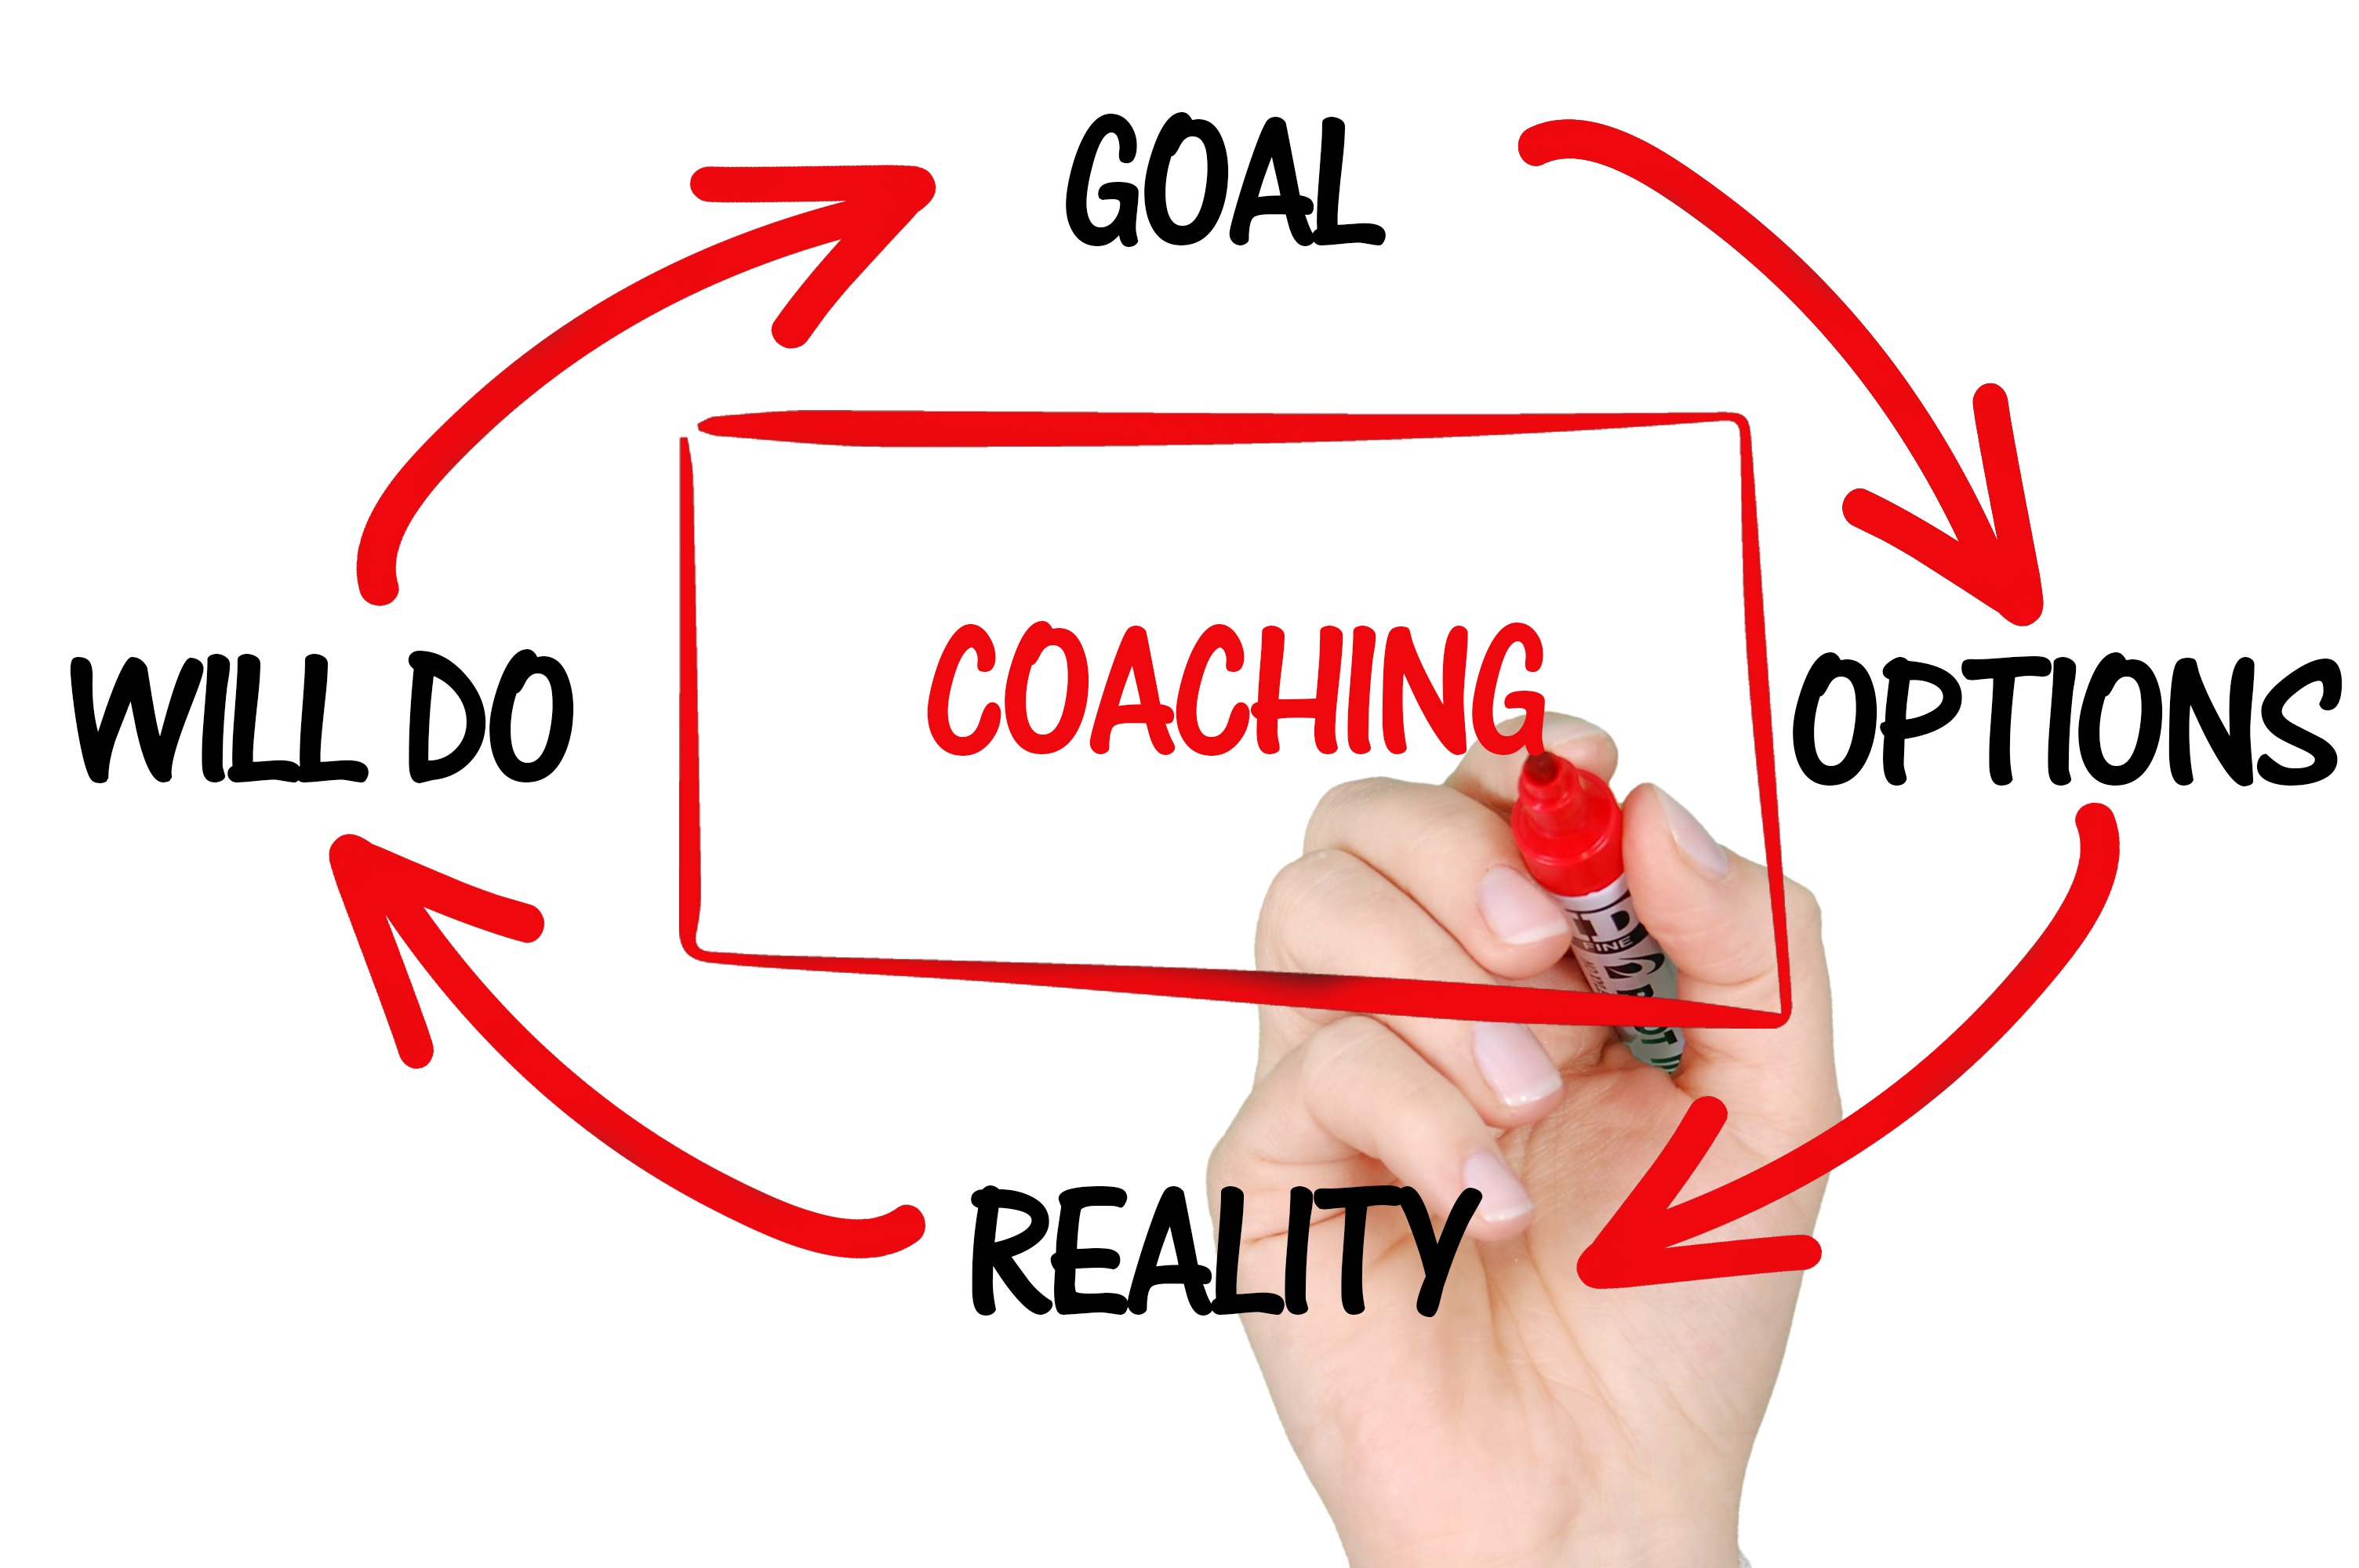 Bild mit rotem Viereck, in der Mitte steht Coaching, drum herum stehen die Worte "will do", "goal", "options" und "reality"